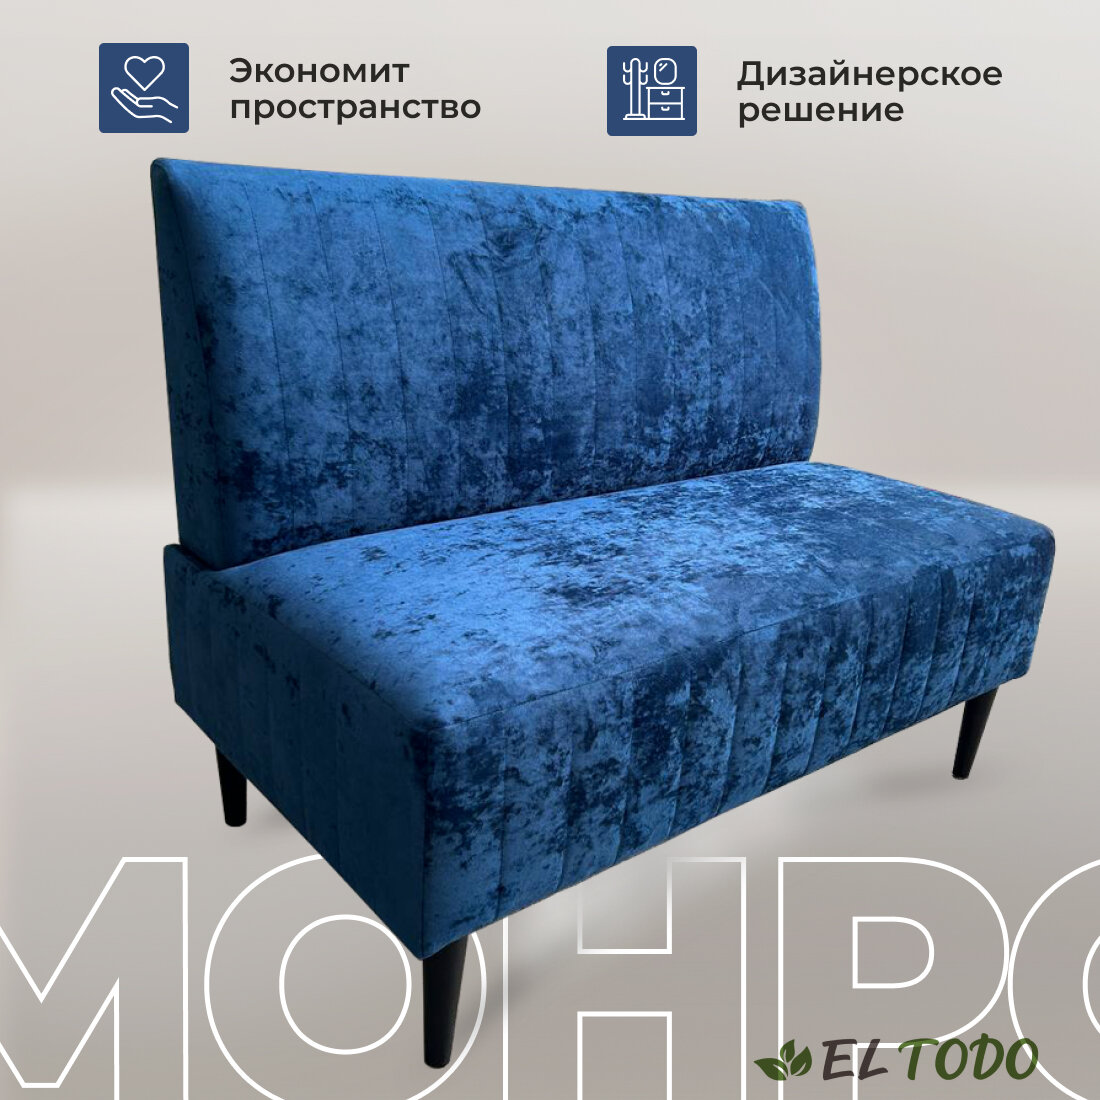 Прямой диван EL TODO монро, на кухню, на балкон, в прихожую, велюр, синий,110х60х82 см